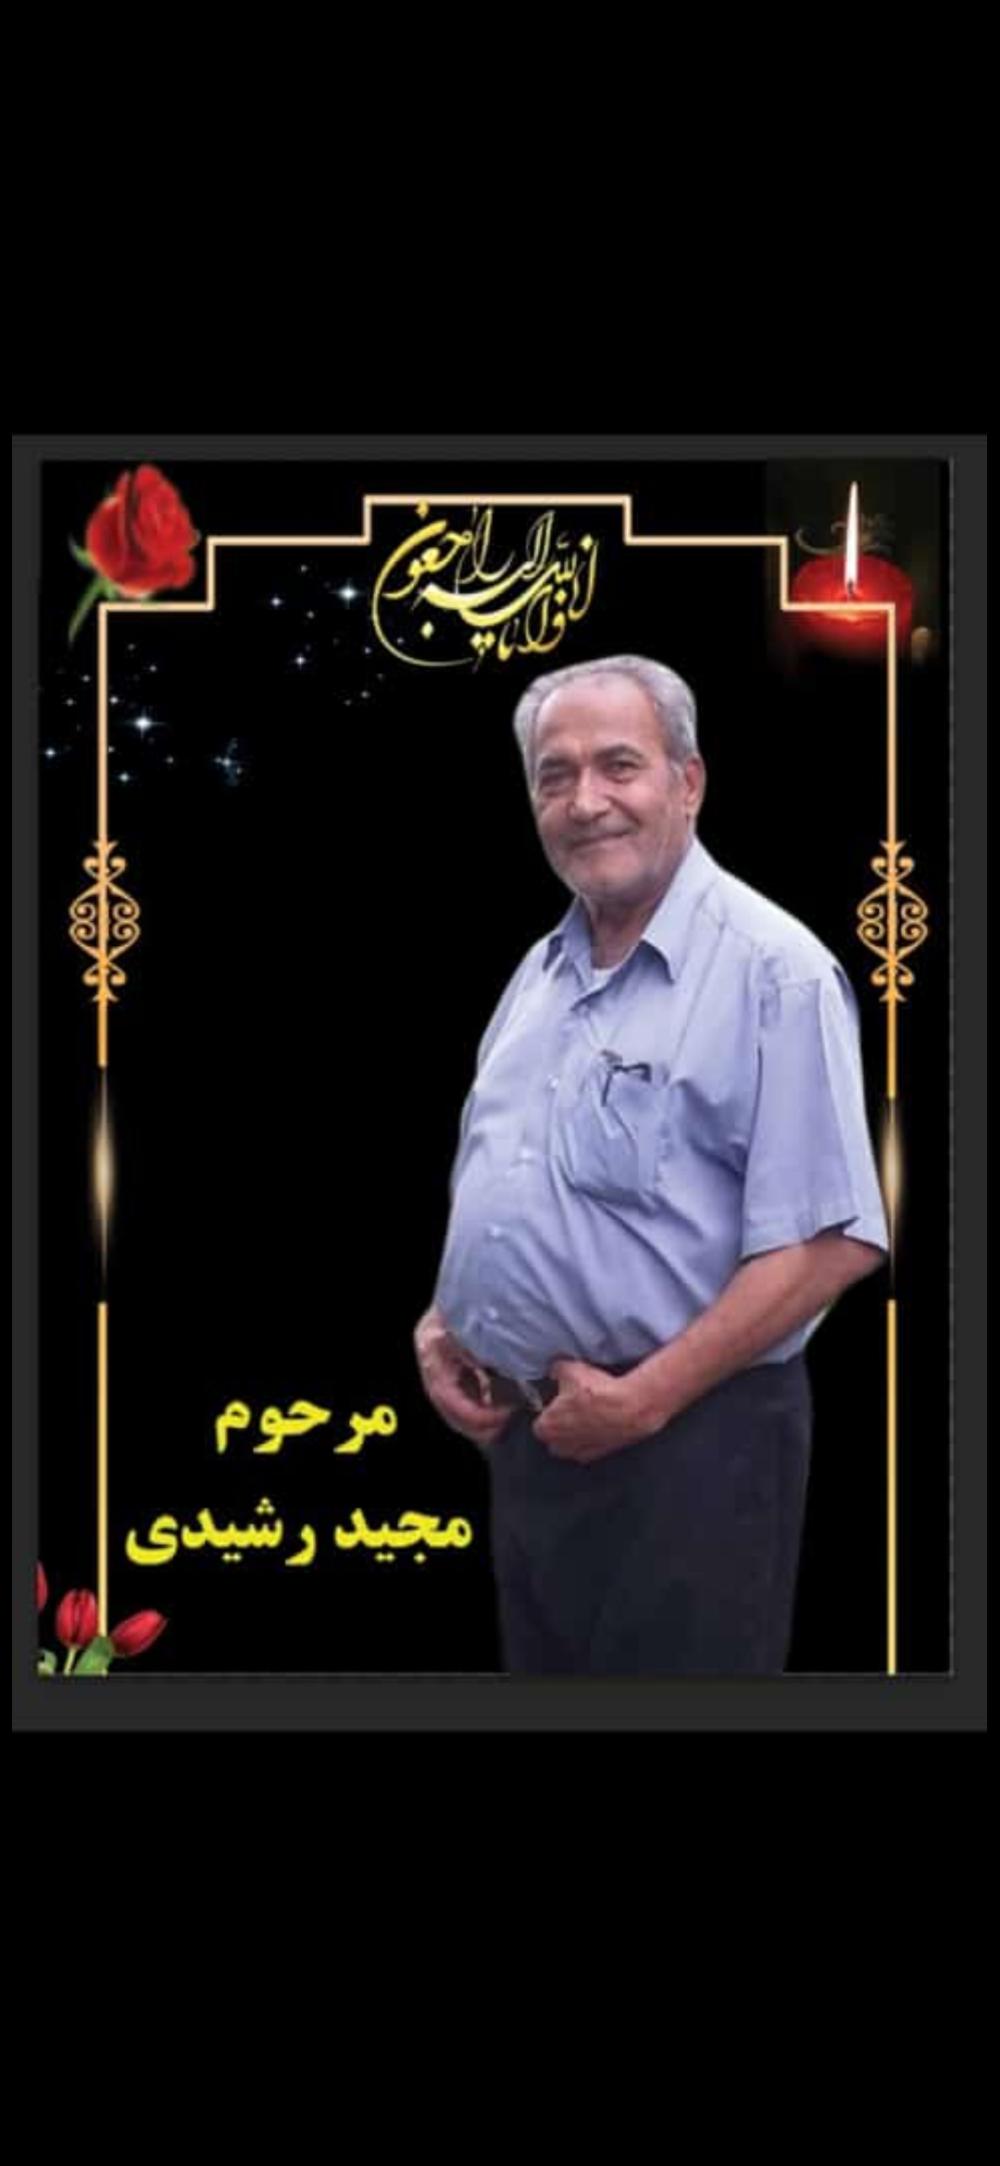 یادبود شادروان مجید رشیدی پور